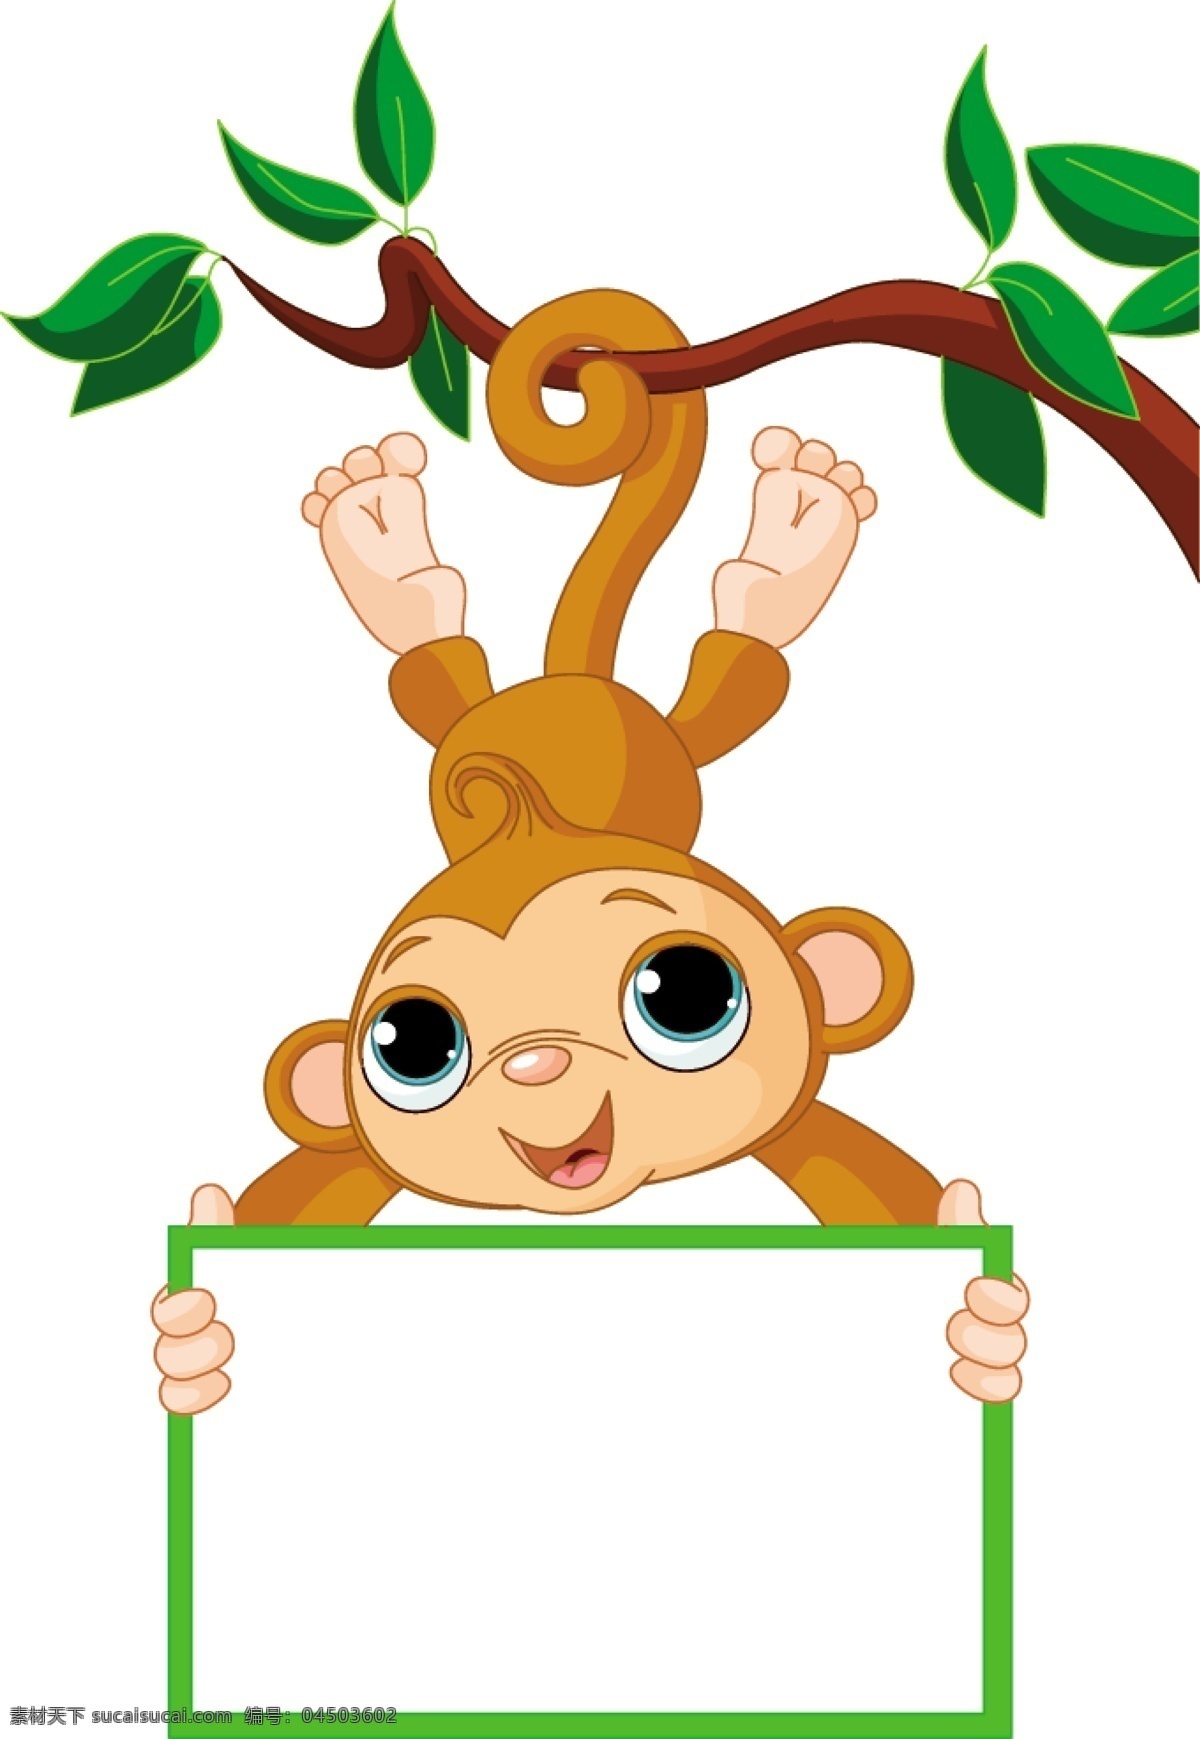 猴子 卡通 图像 矢量 动画 动物 可爱 颠倒 矢量图 矢量人物